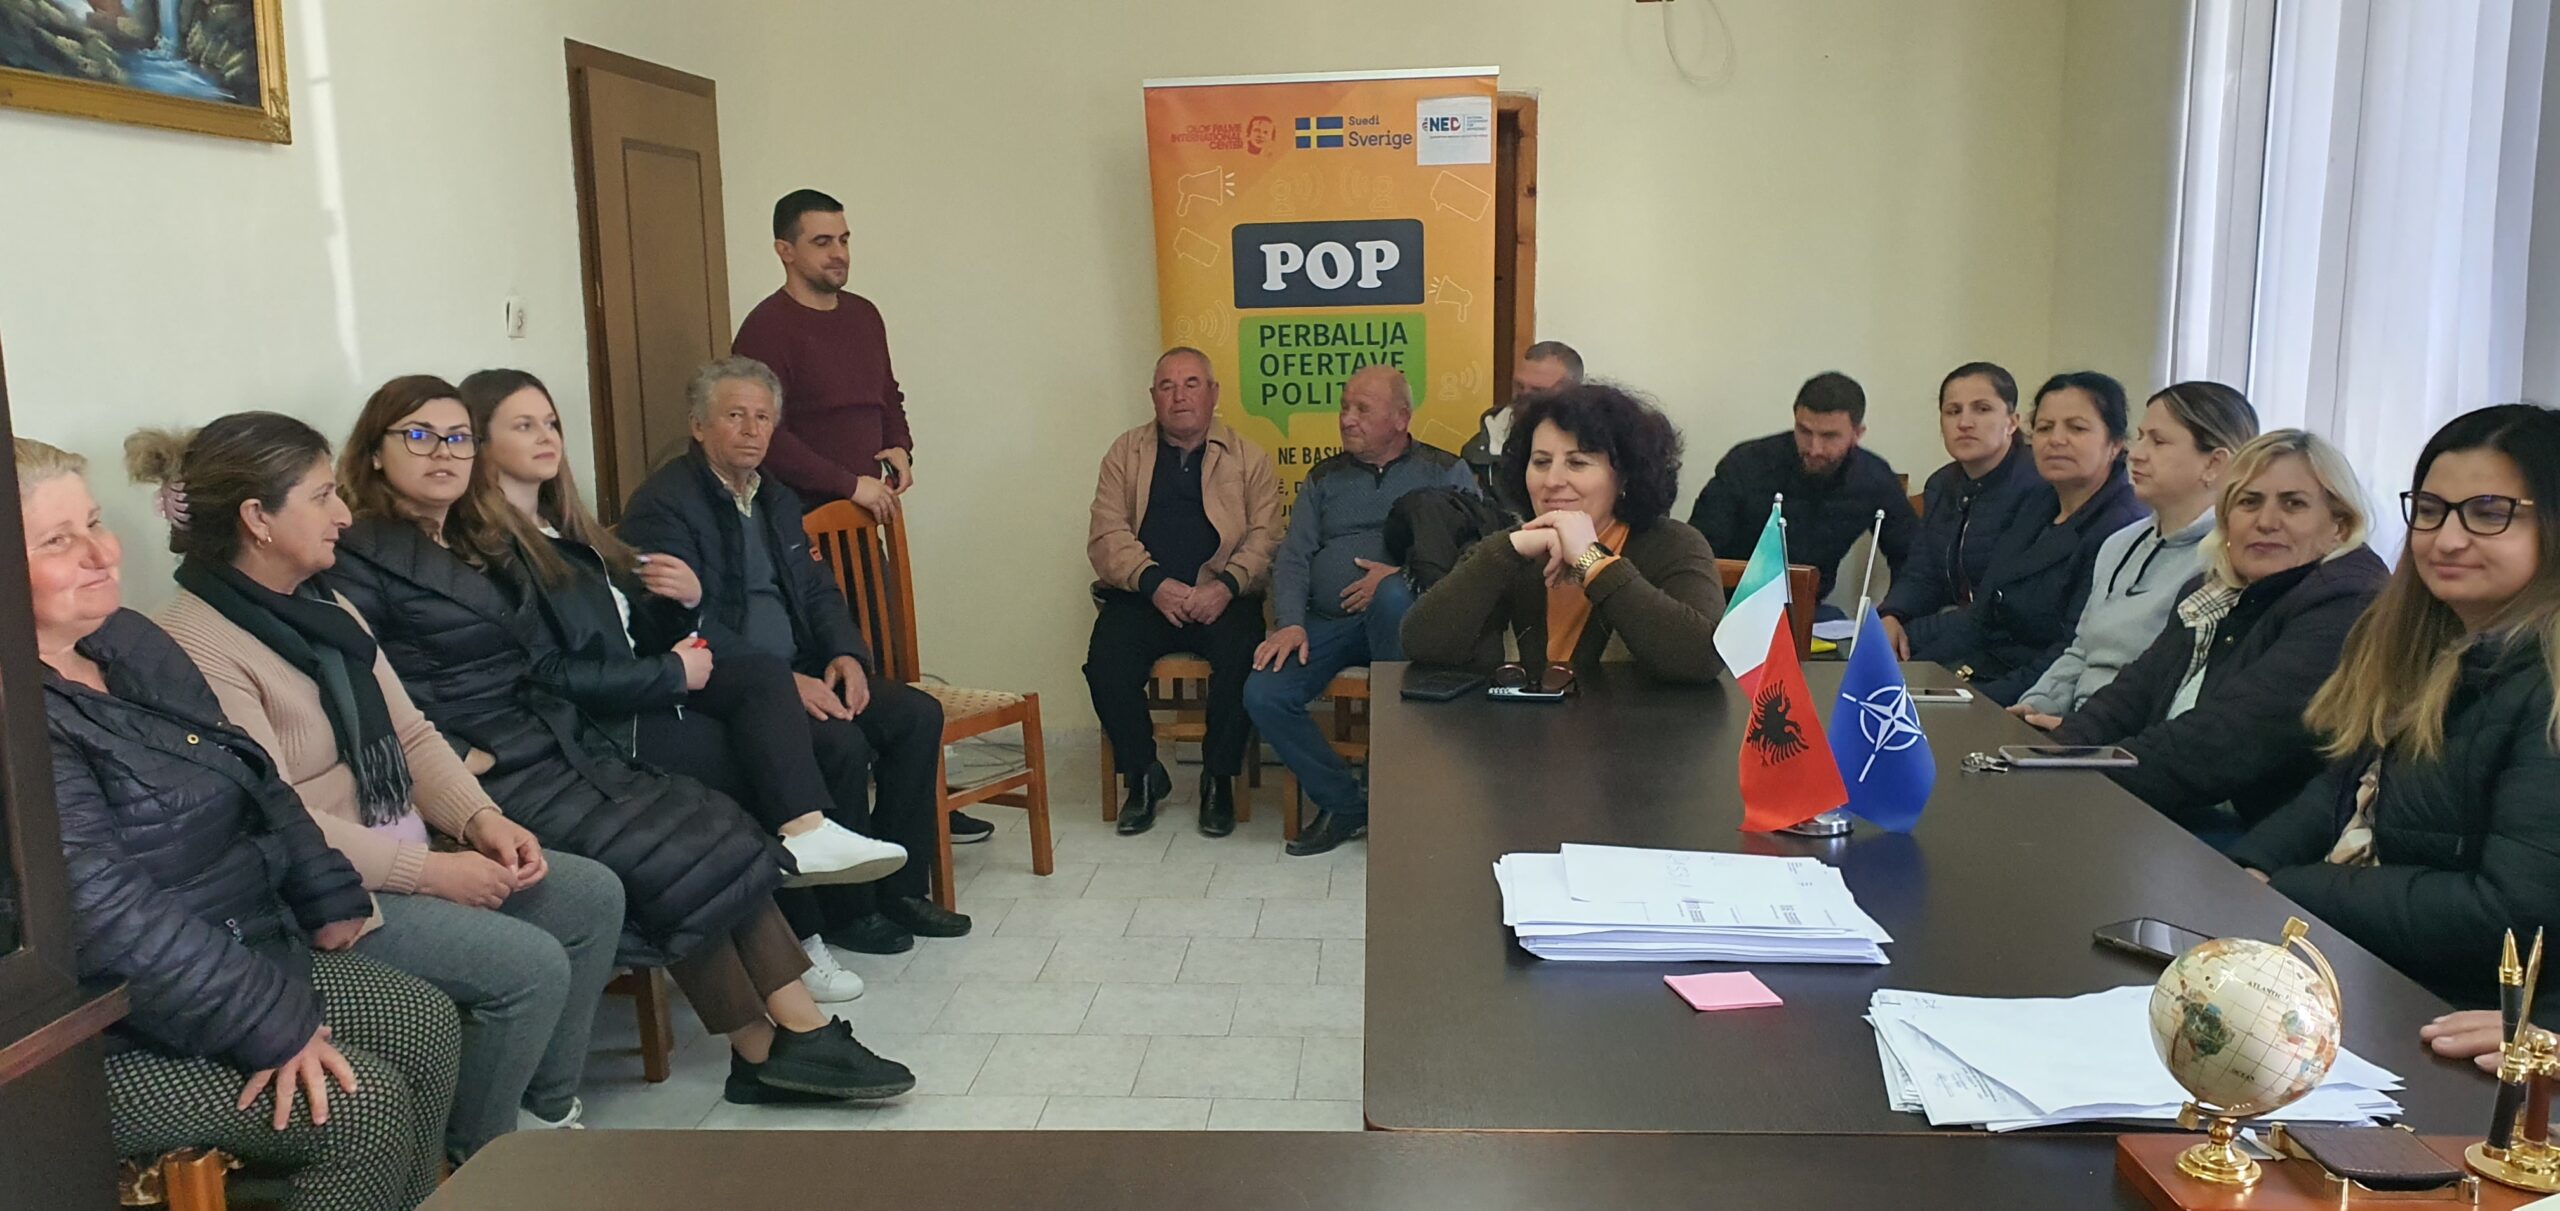 Fokus grup me qytetaret e Njesise Administrative Gjergjan, Elbasan